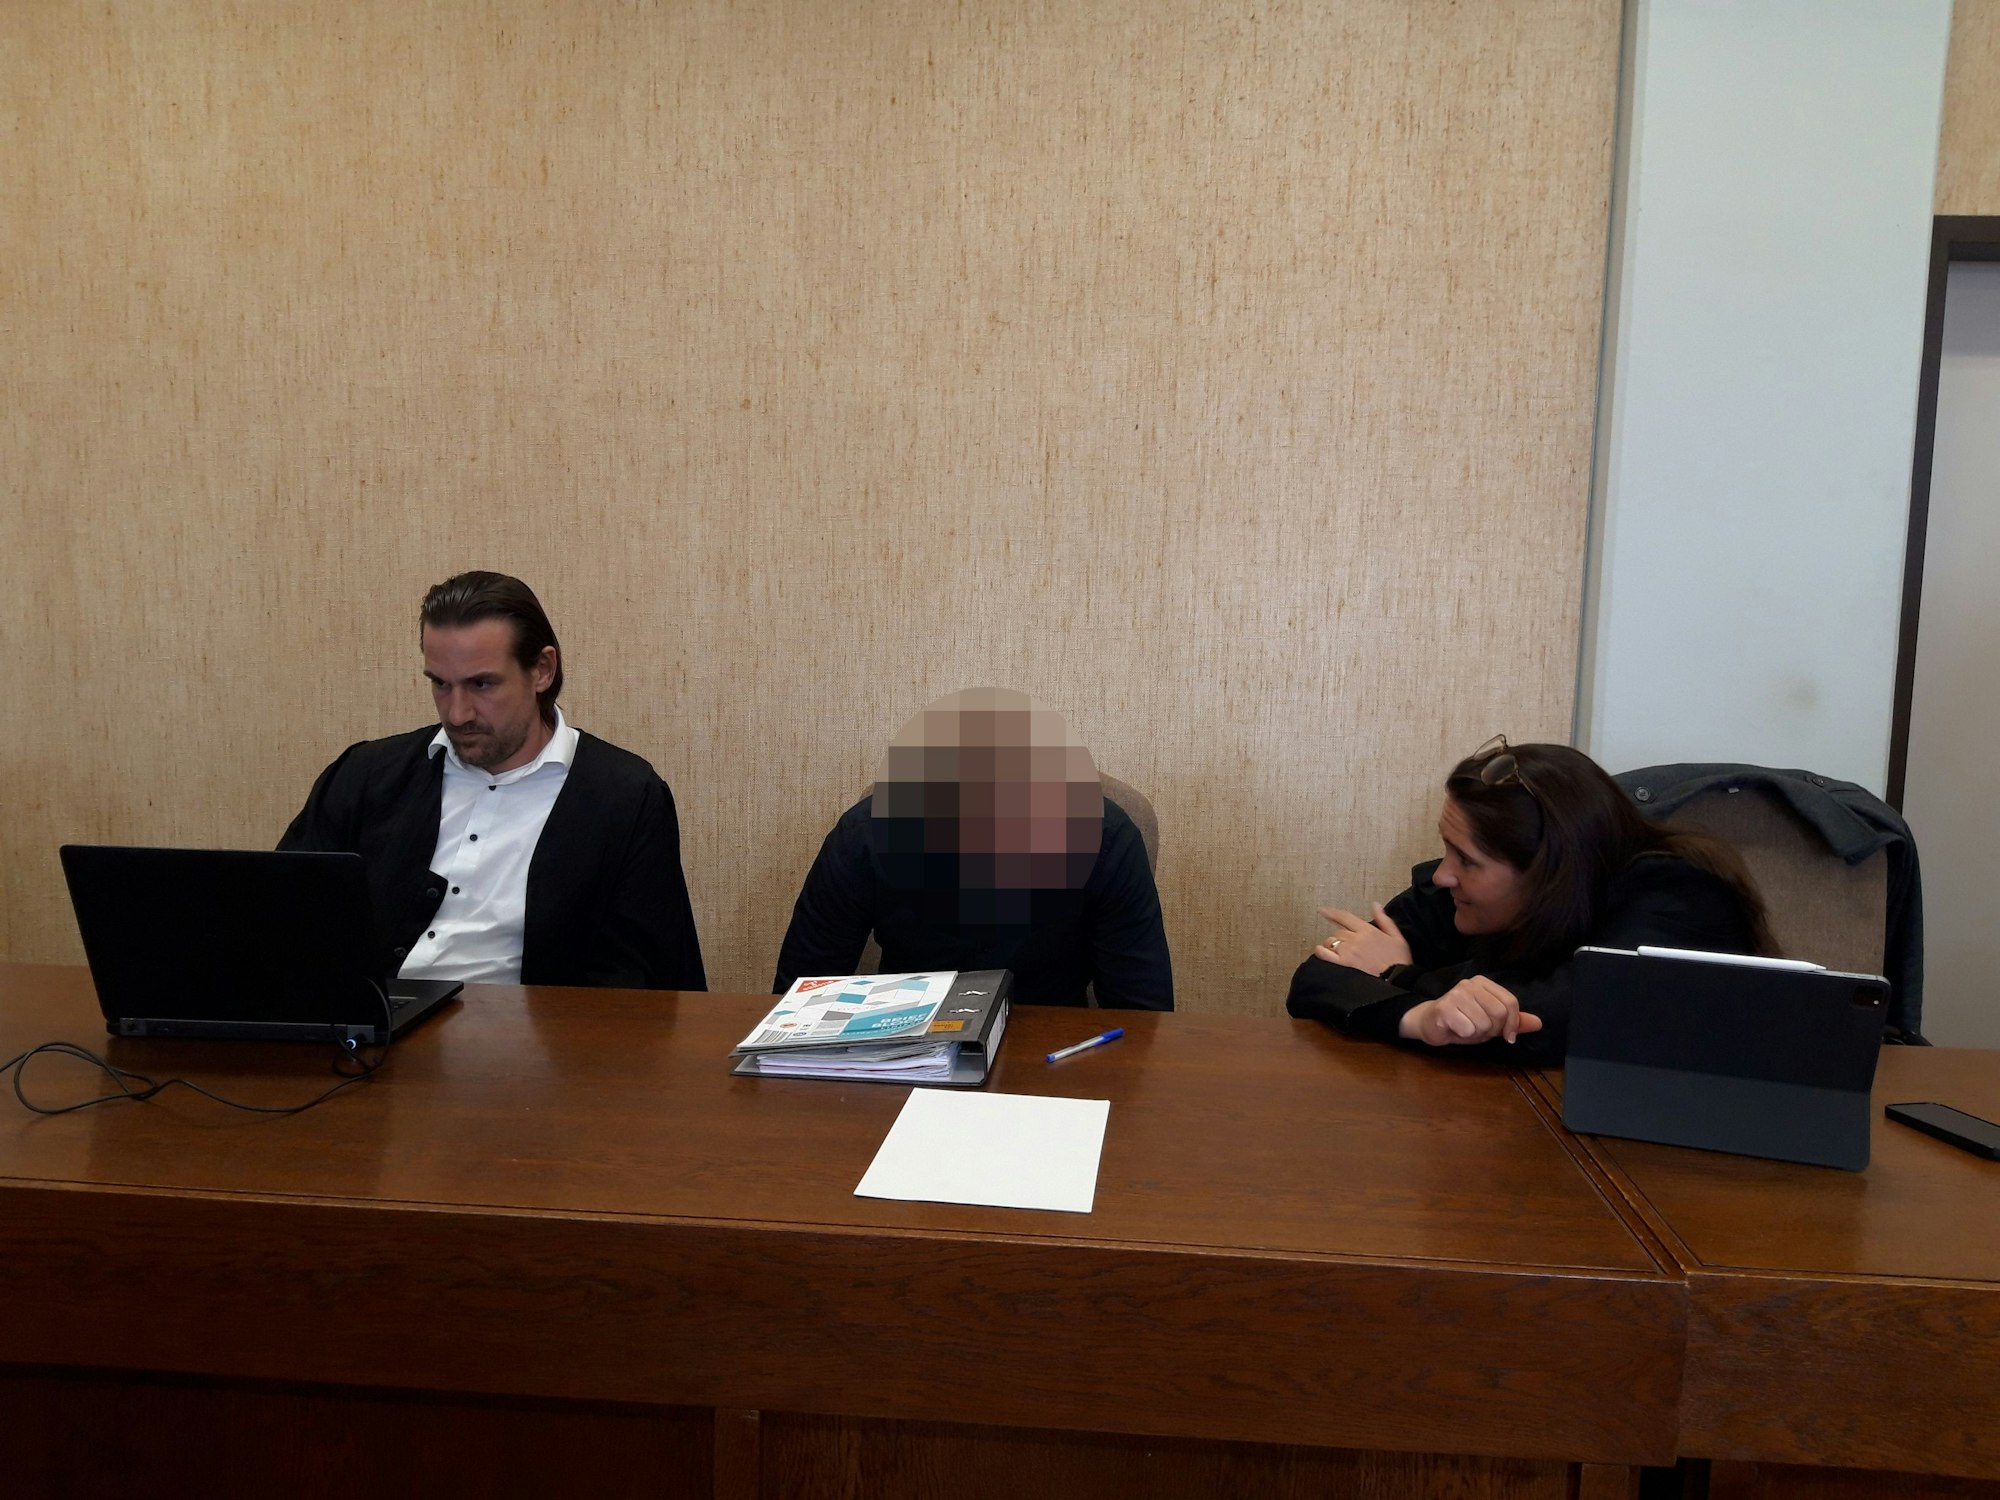 In einem Saal im Kölner Landgericht sitzt eine Person, deren Gesicht unkenntlich ist, zwischen einem Mann, der an einem Laptop arbeitet, und einer Frau, die mit ihm ins Gespräch vertieft ist.